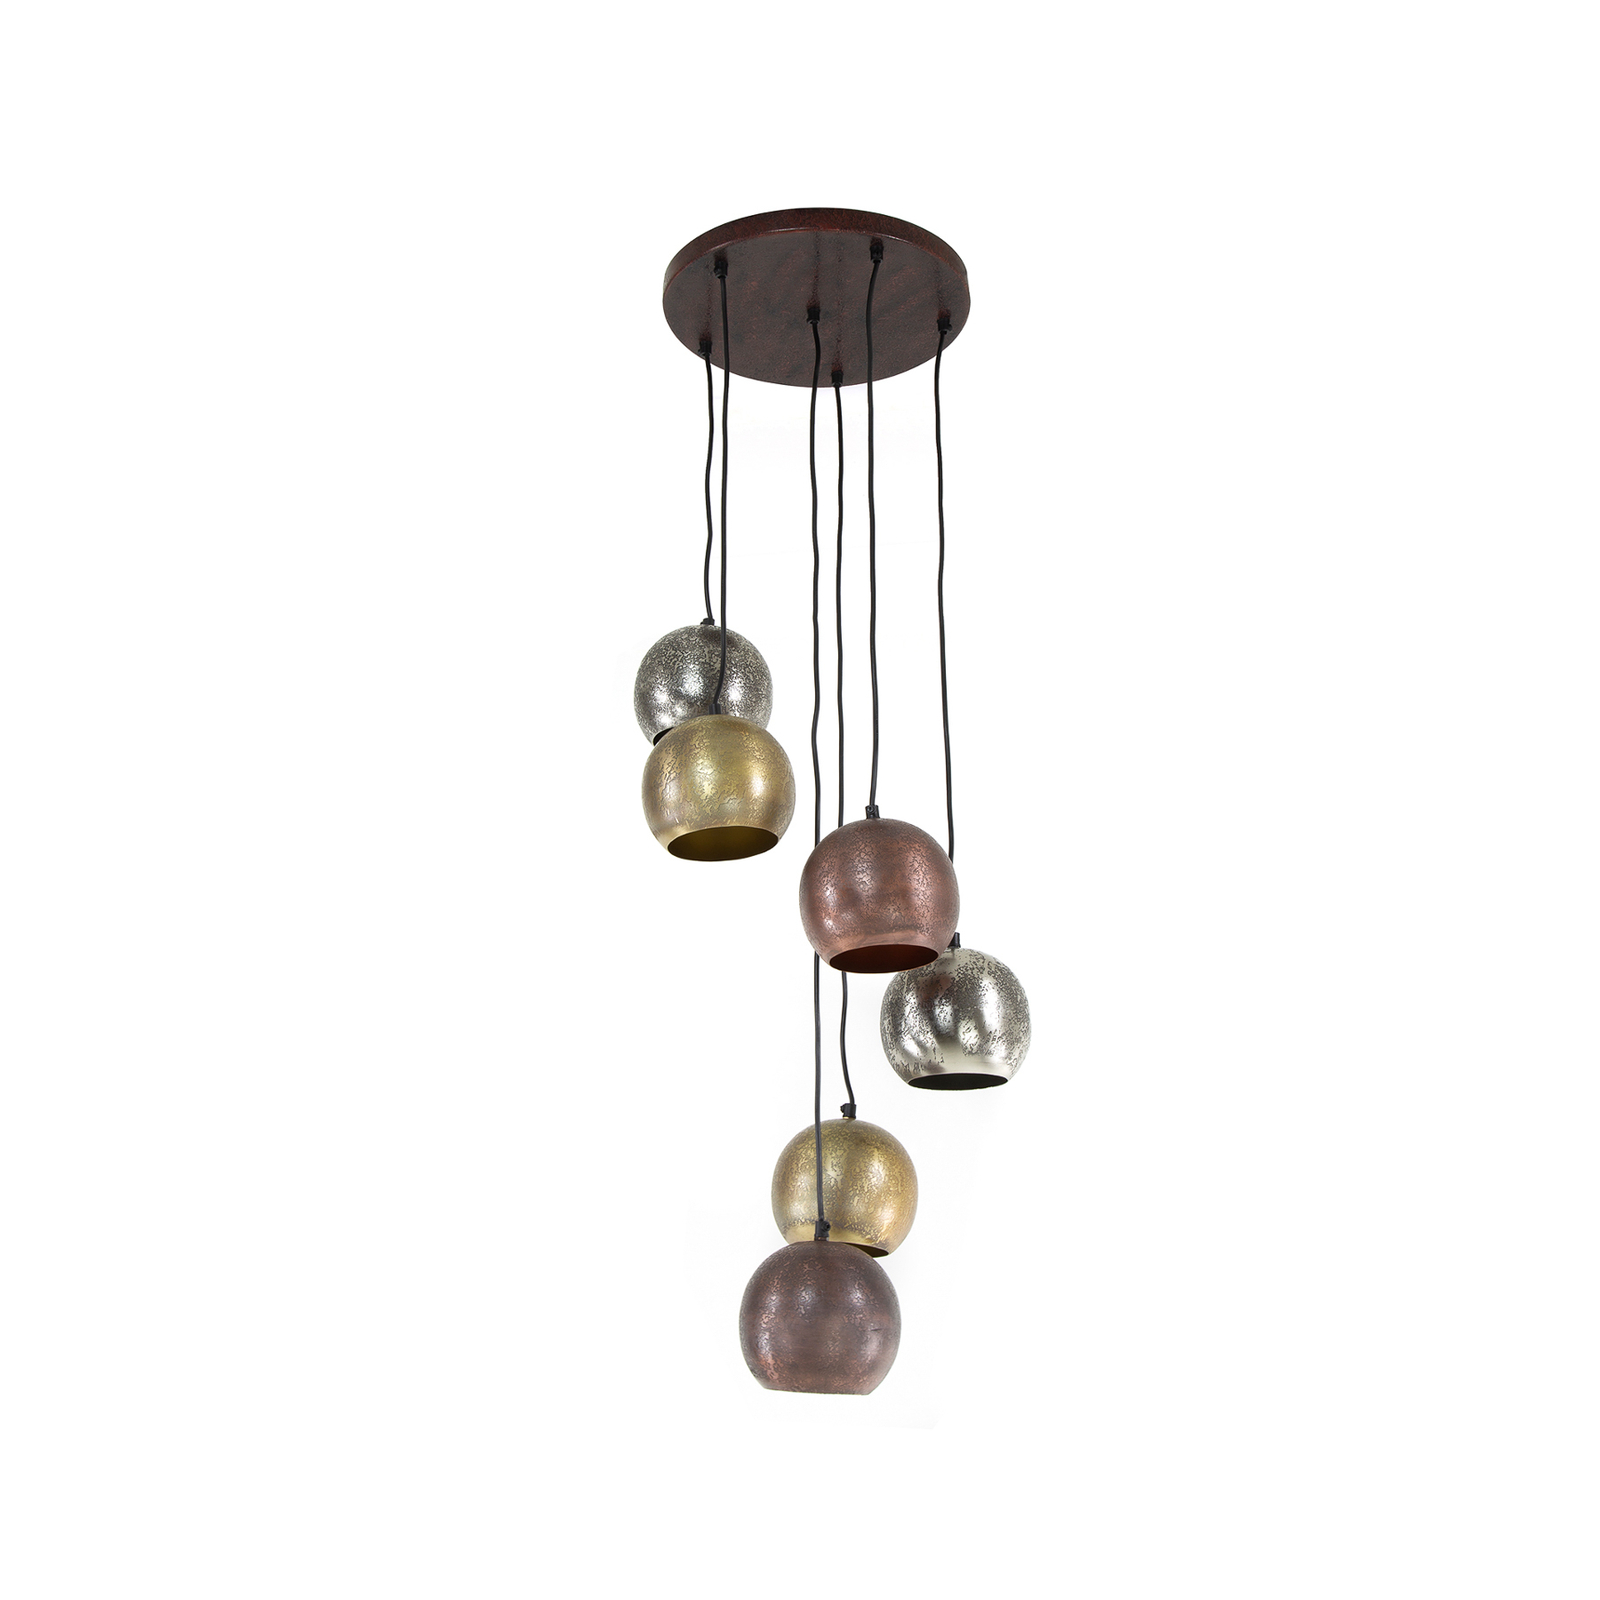 Mixa hanglamp, 6-lamps, goud / zilver / bronz